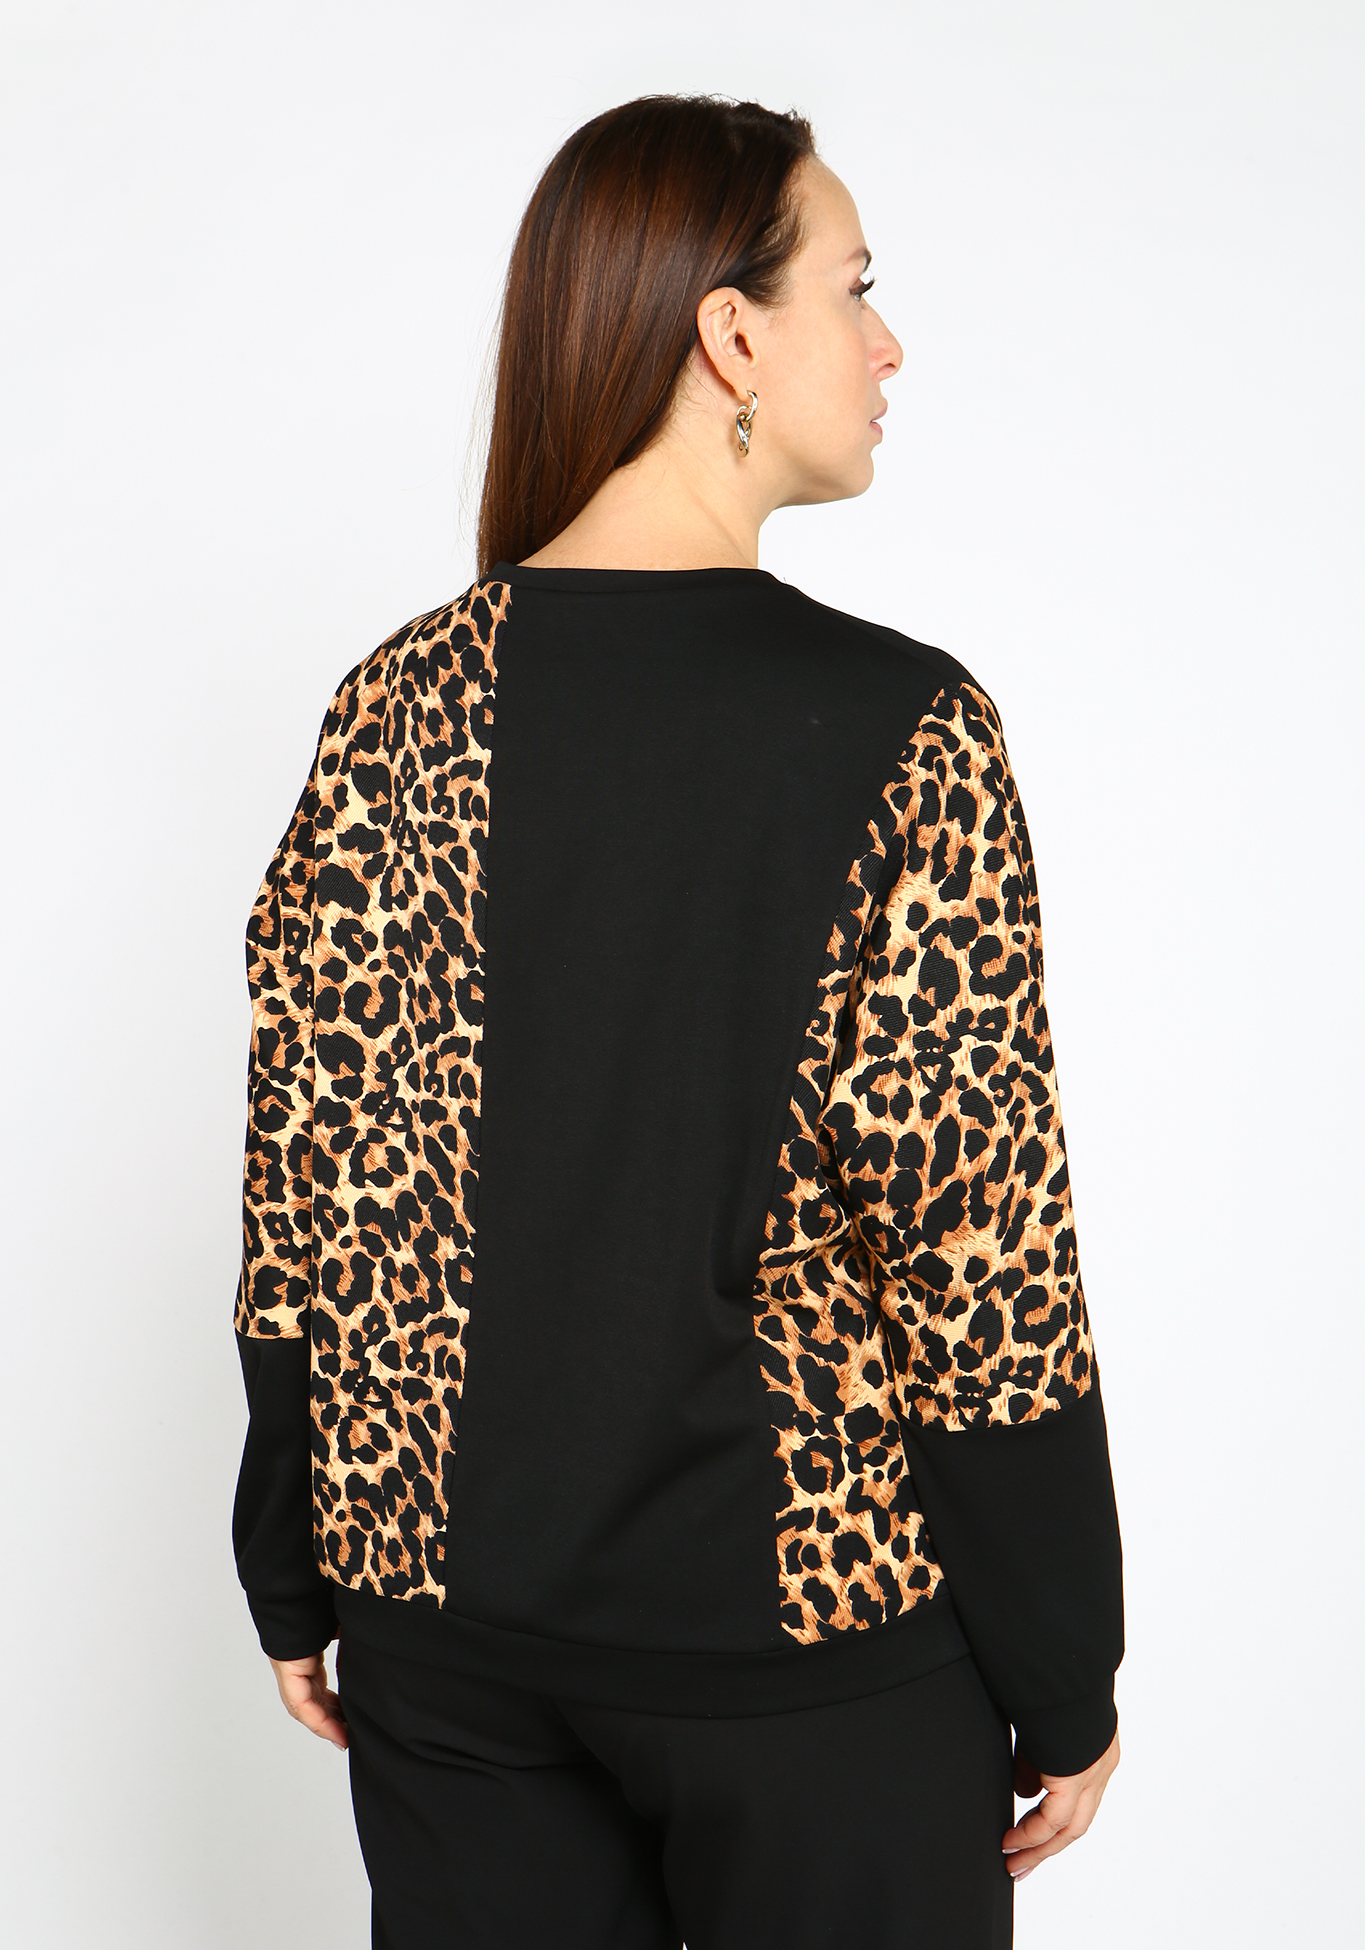 Блуза трикотажная с леопардовым принтом Elletto Life, размер 48, цвет коричневый - фото 4